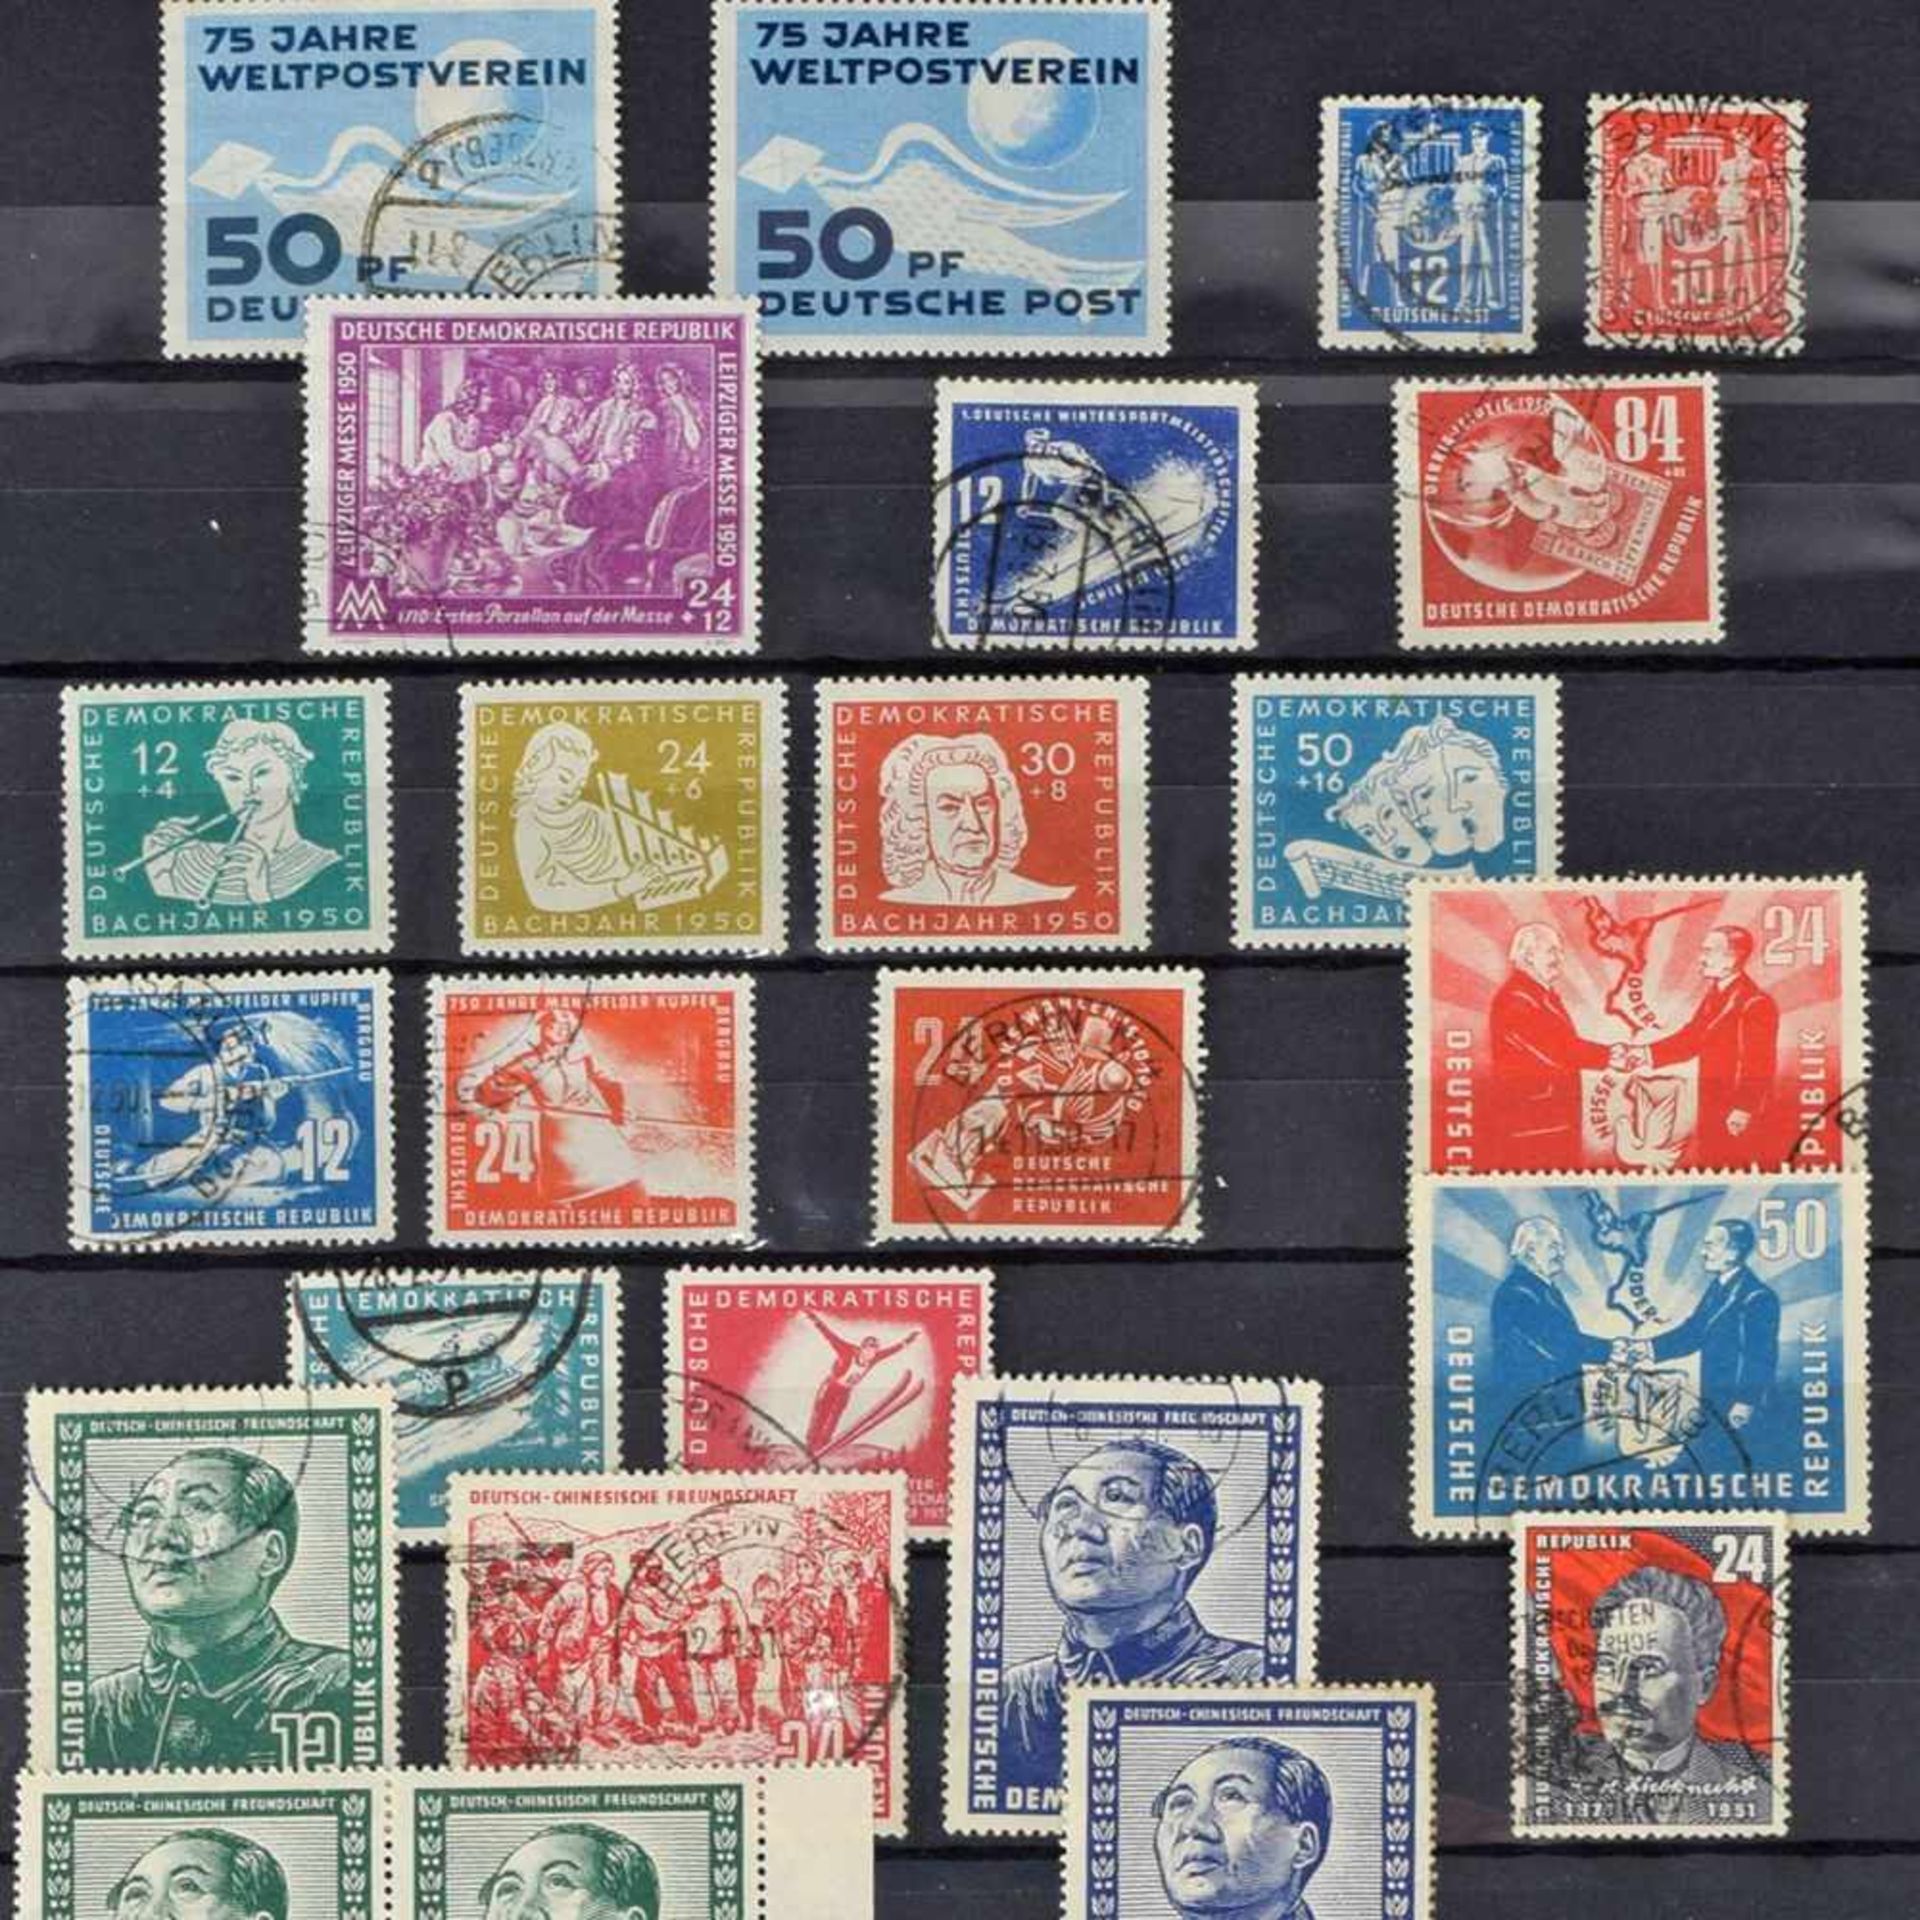 Auswahl Briefmarken Anfangsjahre DDR Auswahl ca. 1949-1955, dabei u.a.: Mi.-Nr. 242 (=DDR Nr. 1) "